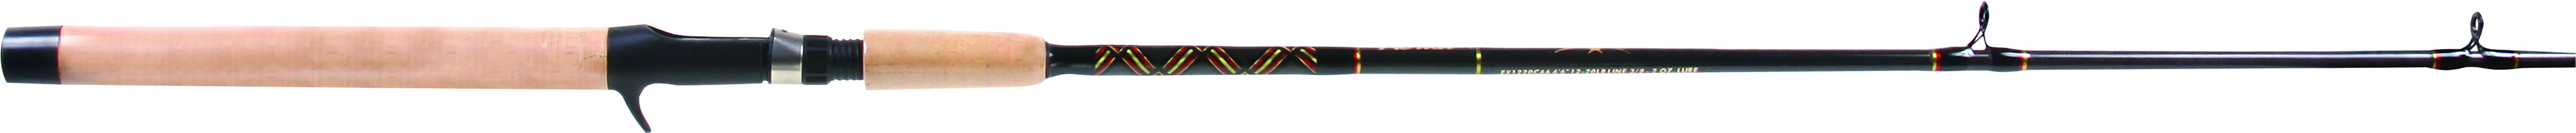 Star Rod, Aerial Inshore Spinning Rod, Medium-Light, 6-12lb, 1/4-5